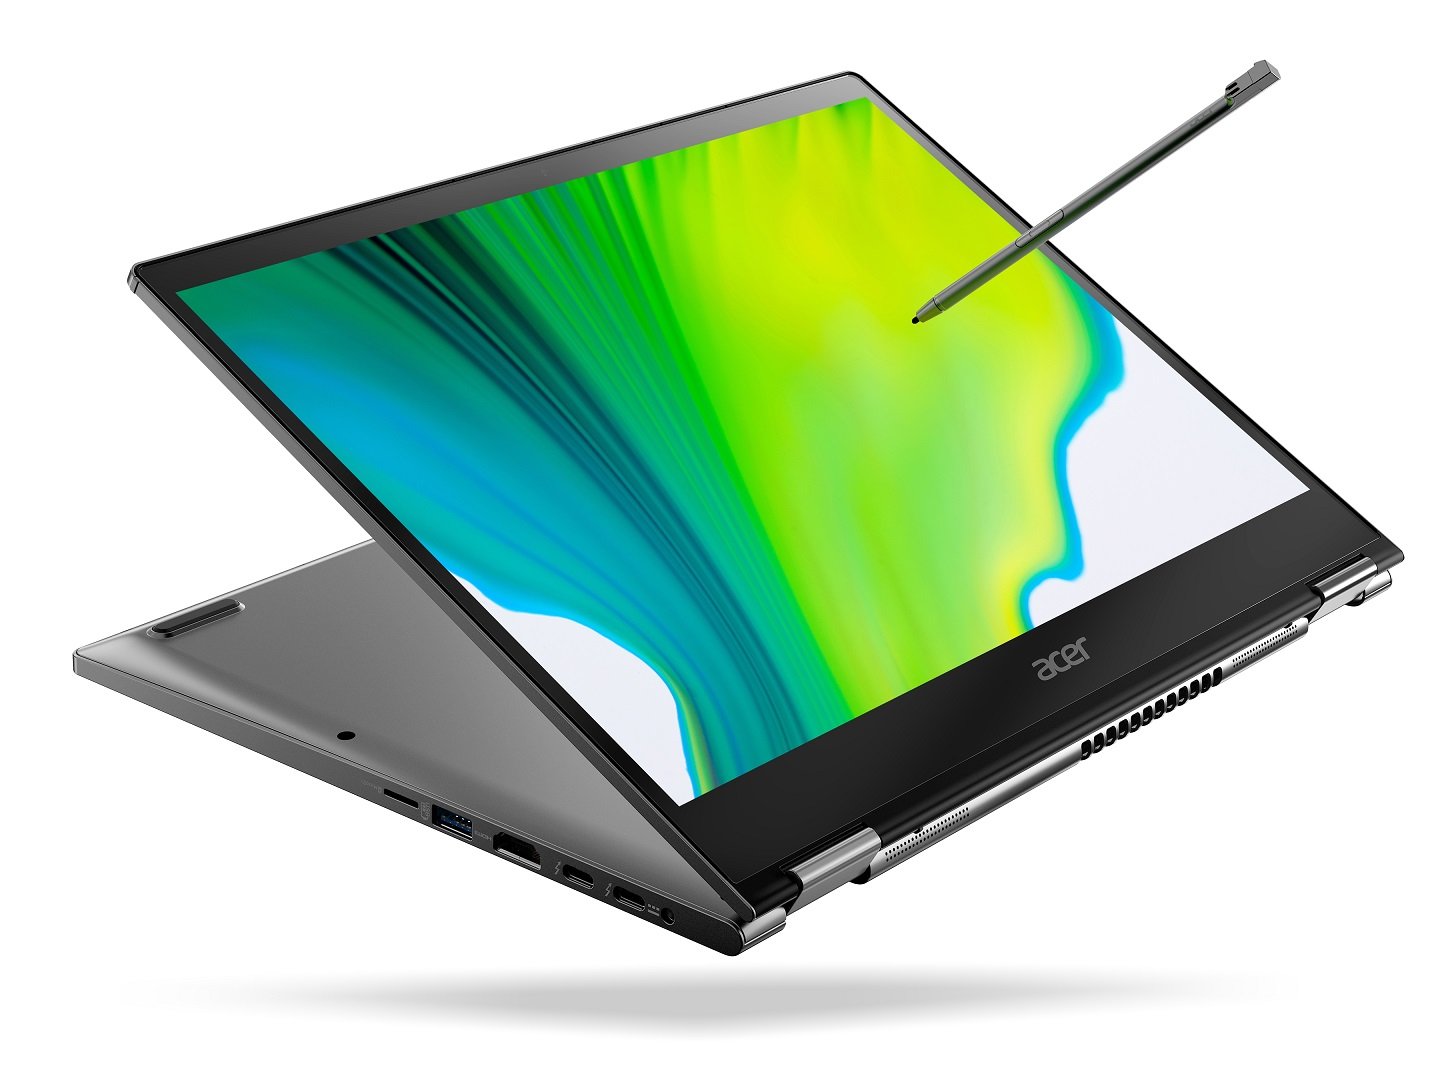 Acer präsentiert den Surface Laptop als Convertible-Notebook